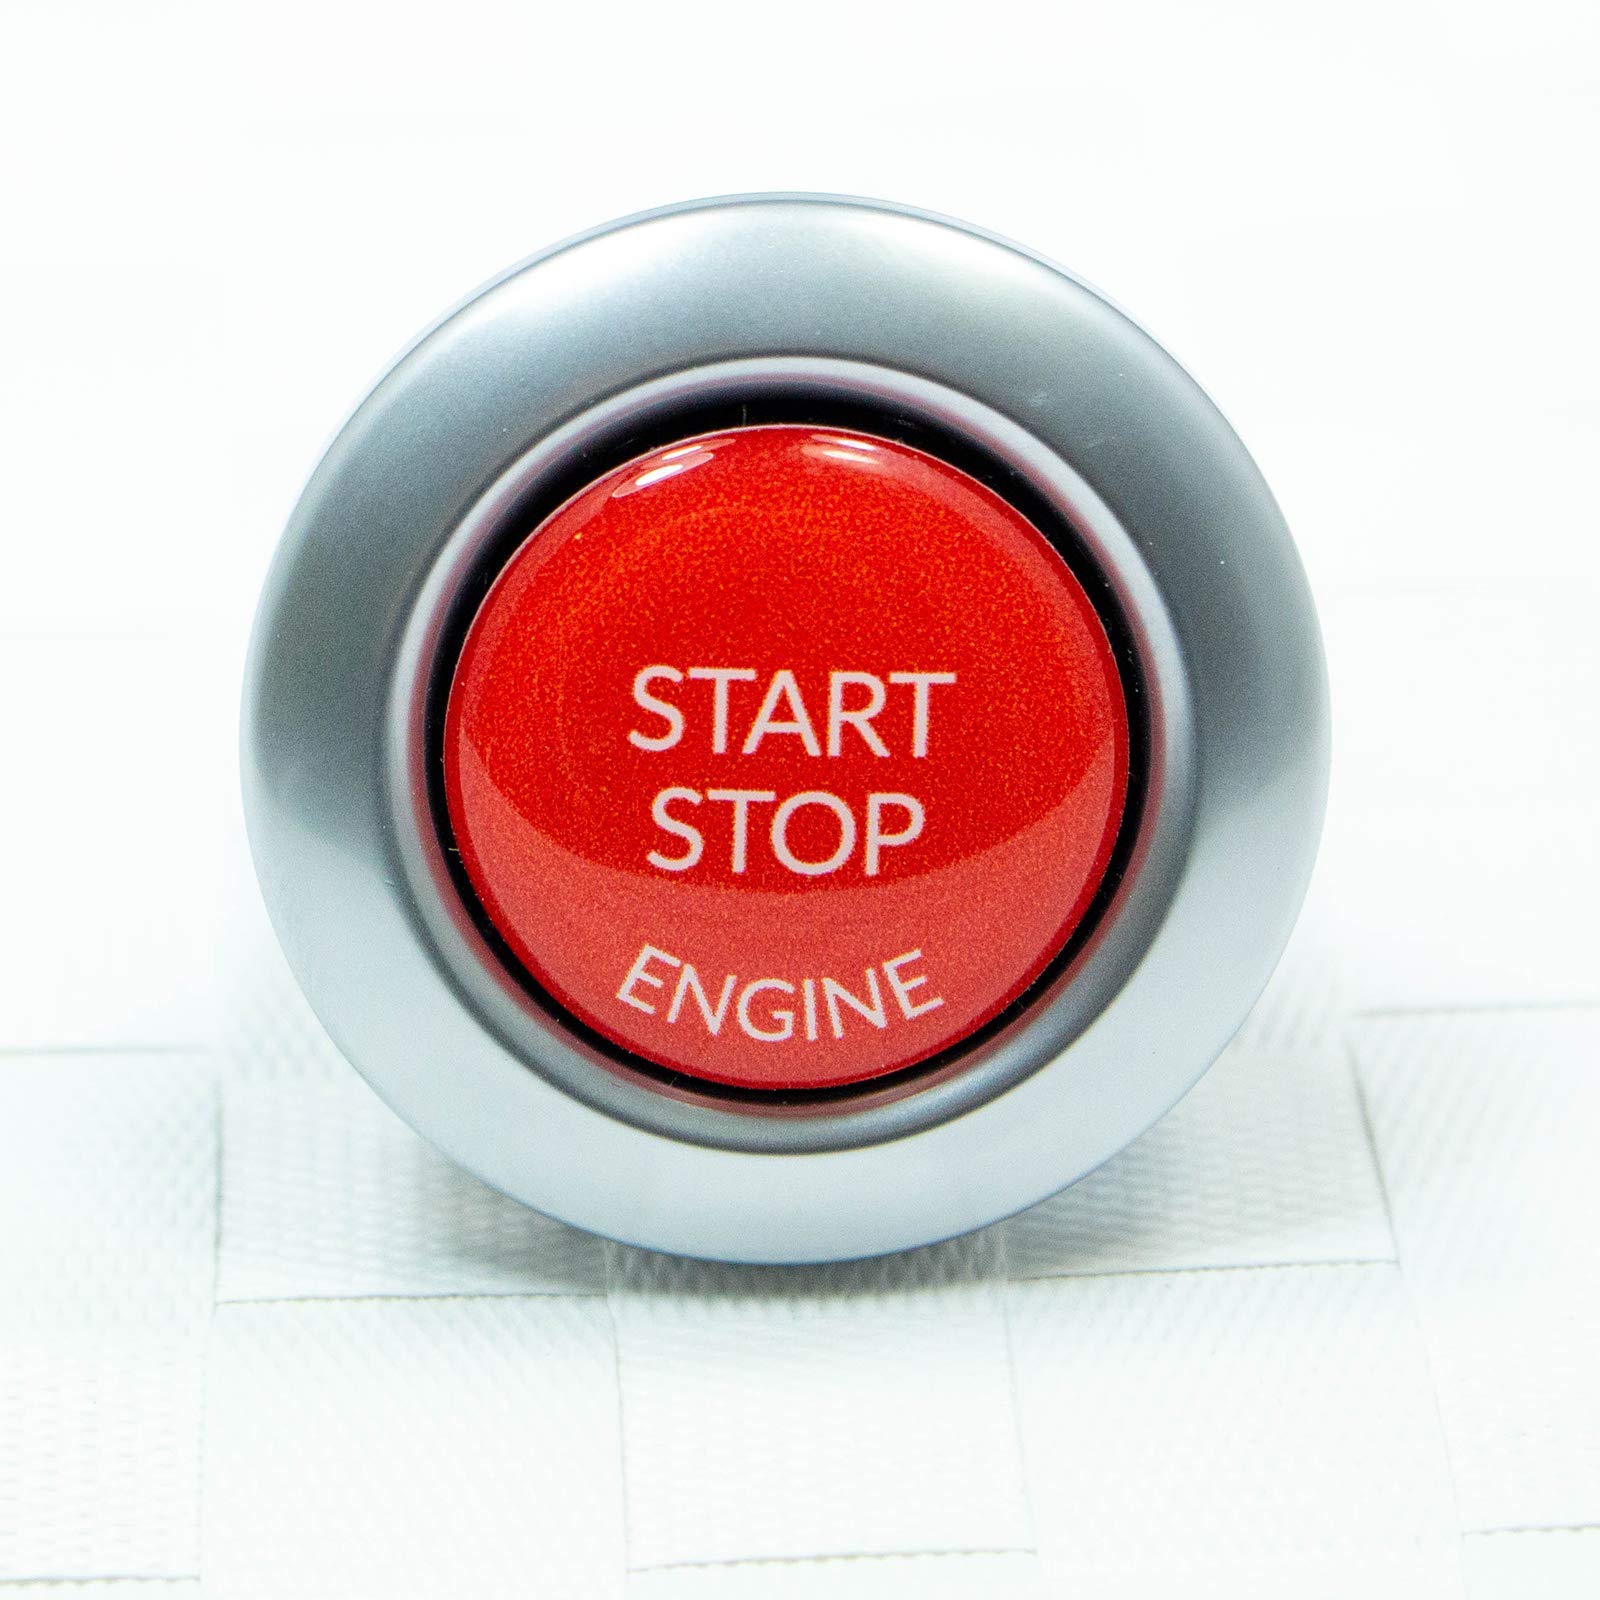 Start Stop Engine Knopf (1 Stück) Aufkleber Reparatur Schalter Schutz Kappe Austausch Taste Tastenabdeckung zündschlüssel Cover Zündung Rot von Forma E-Commerce